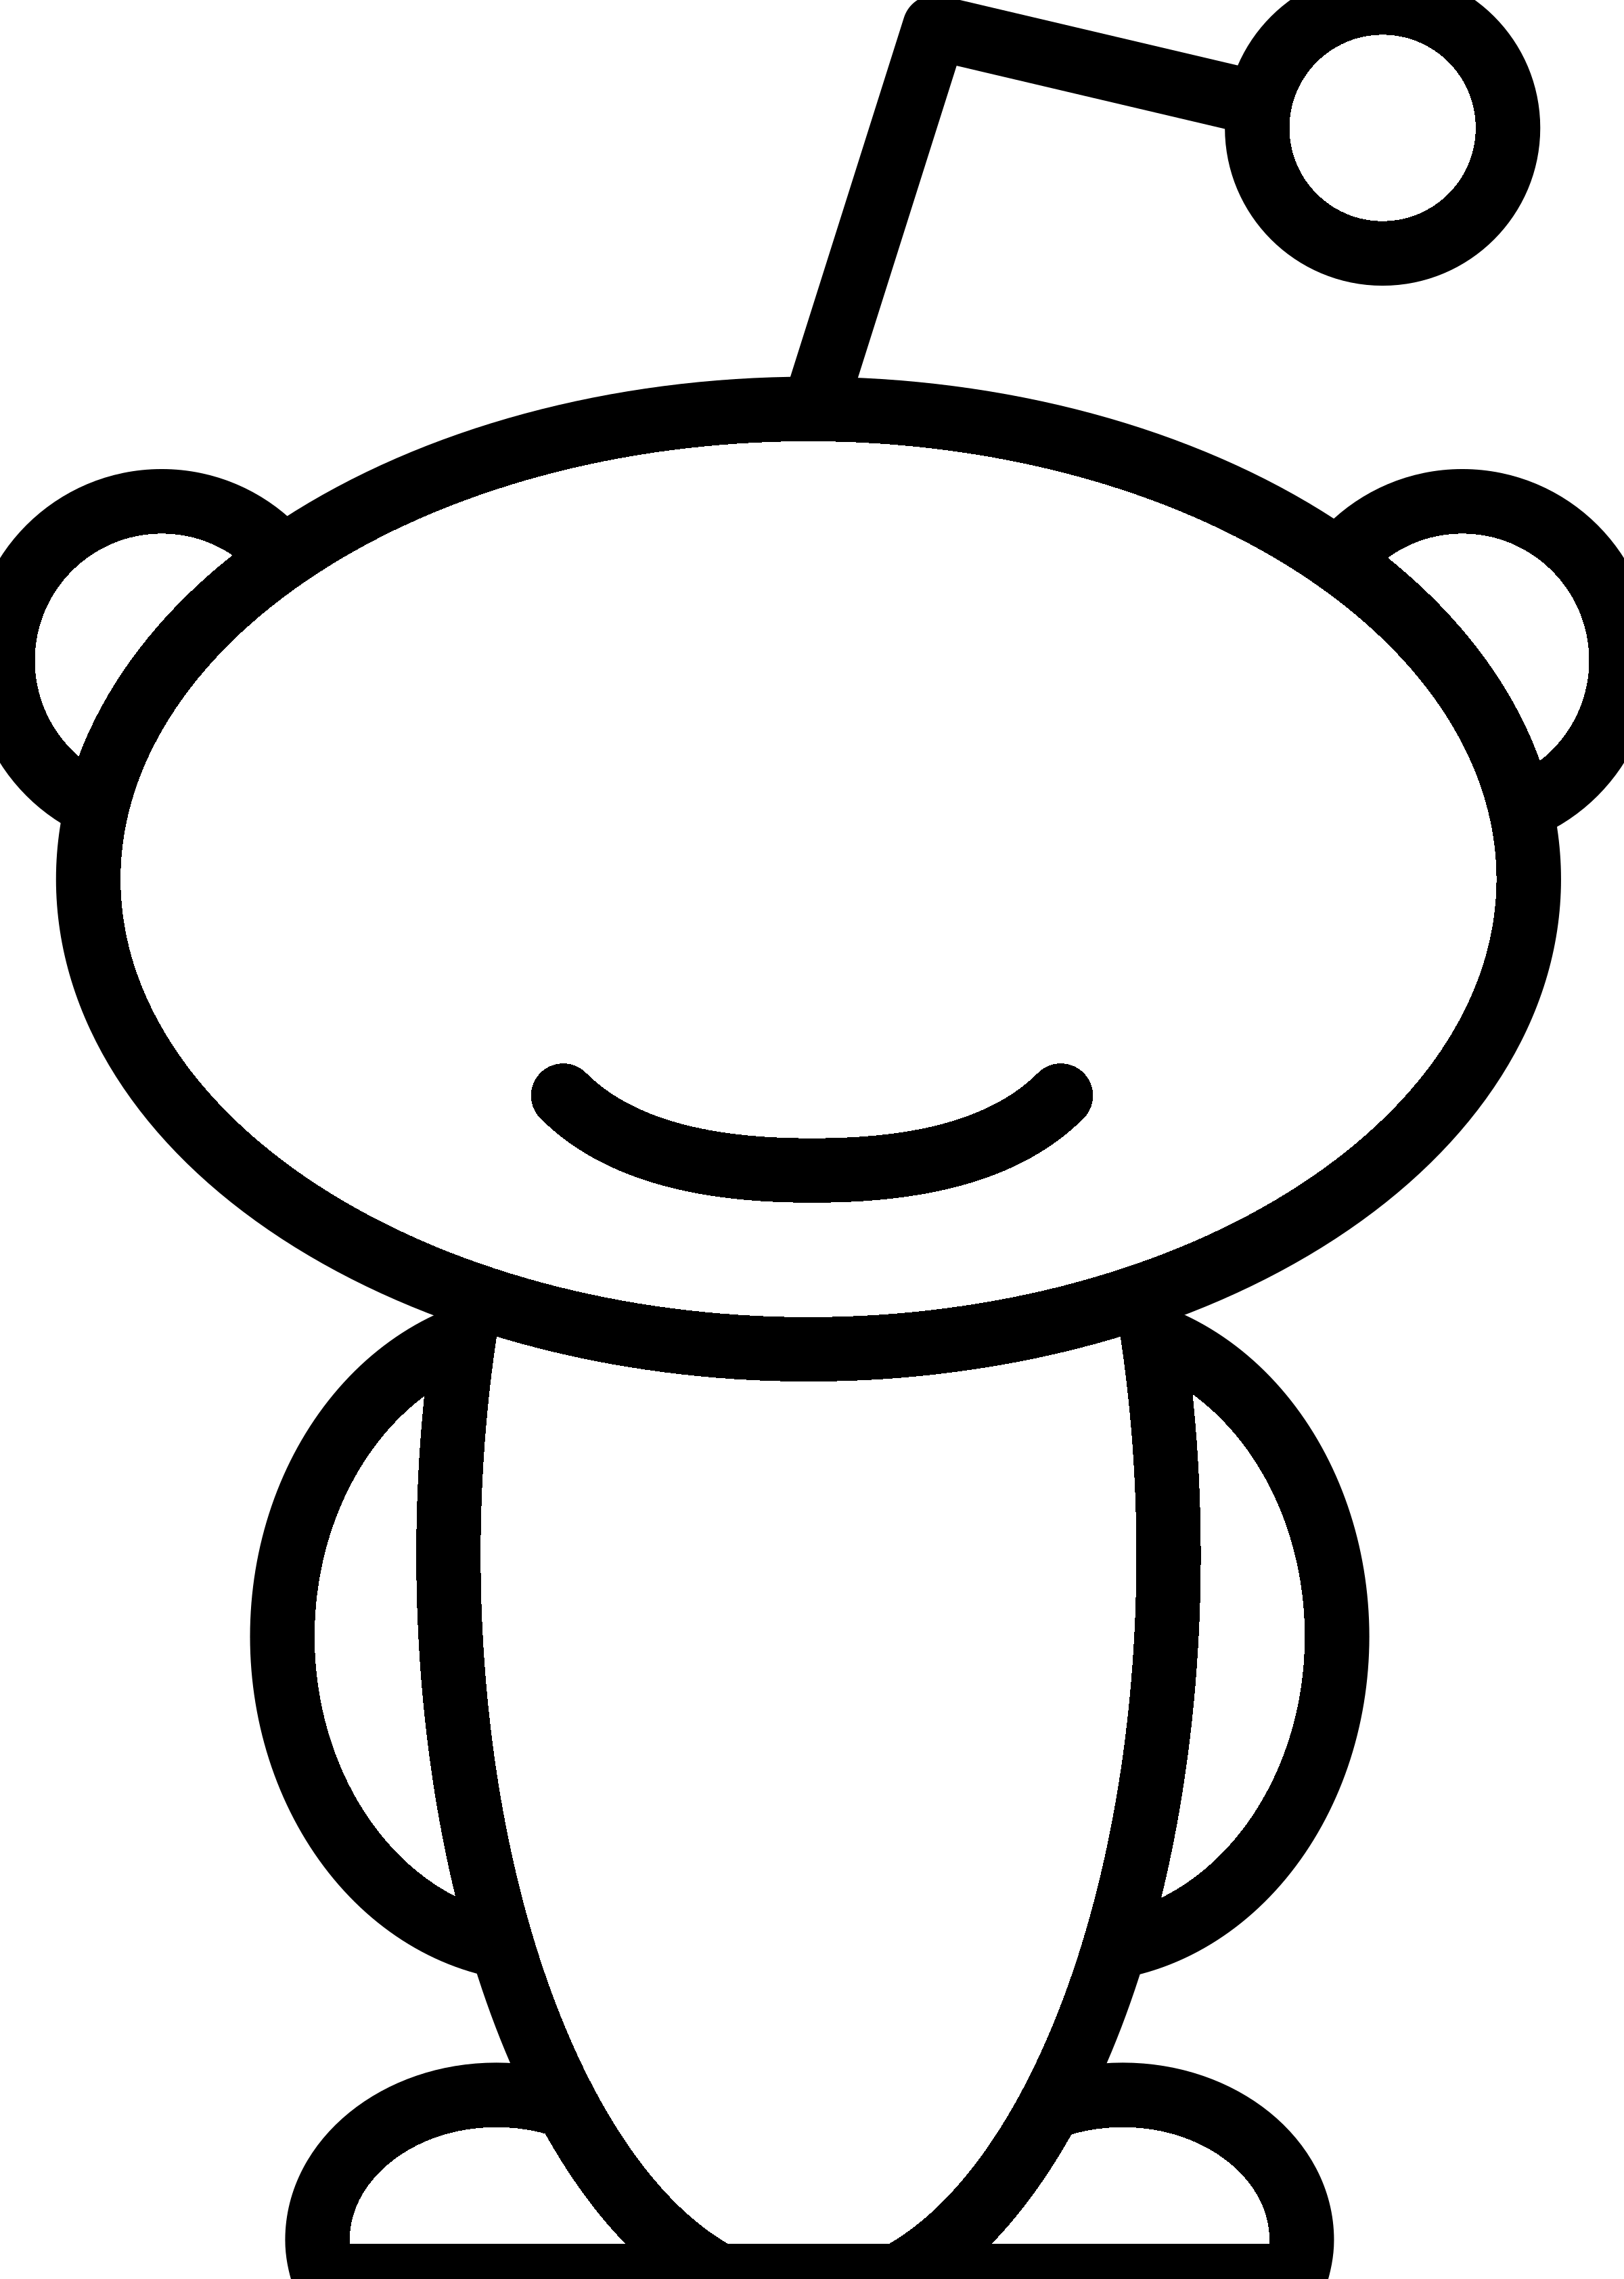 Black and White Alien Logo - Reddit Alien Logo PNG Transparent & SVG Vector - Freebie Supply